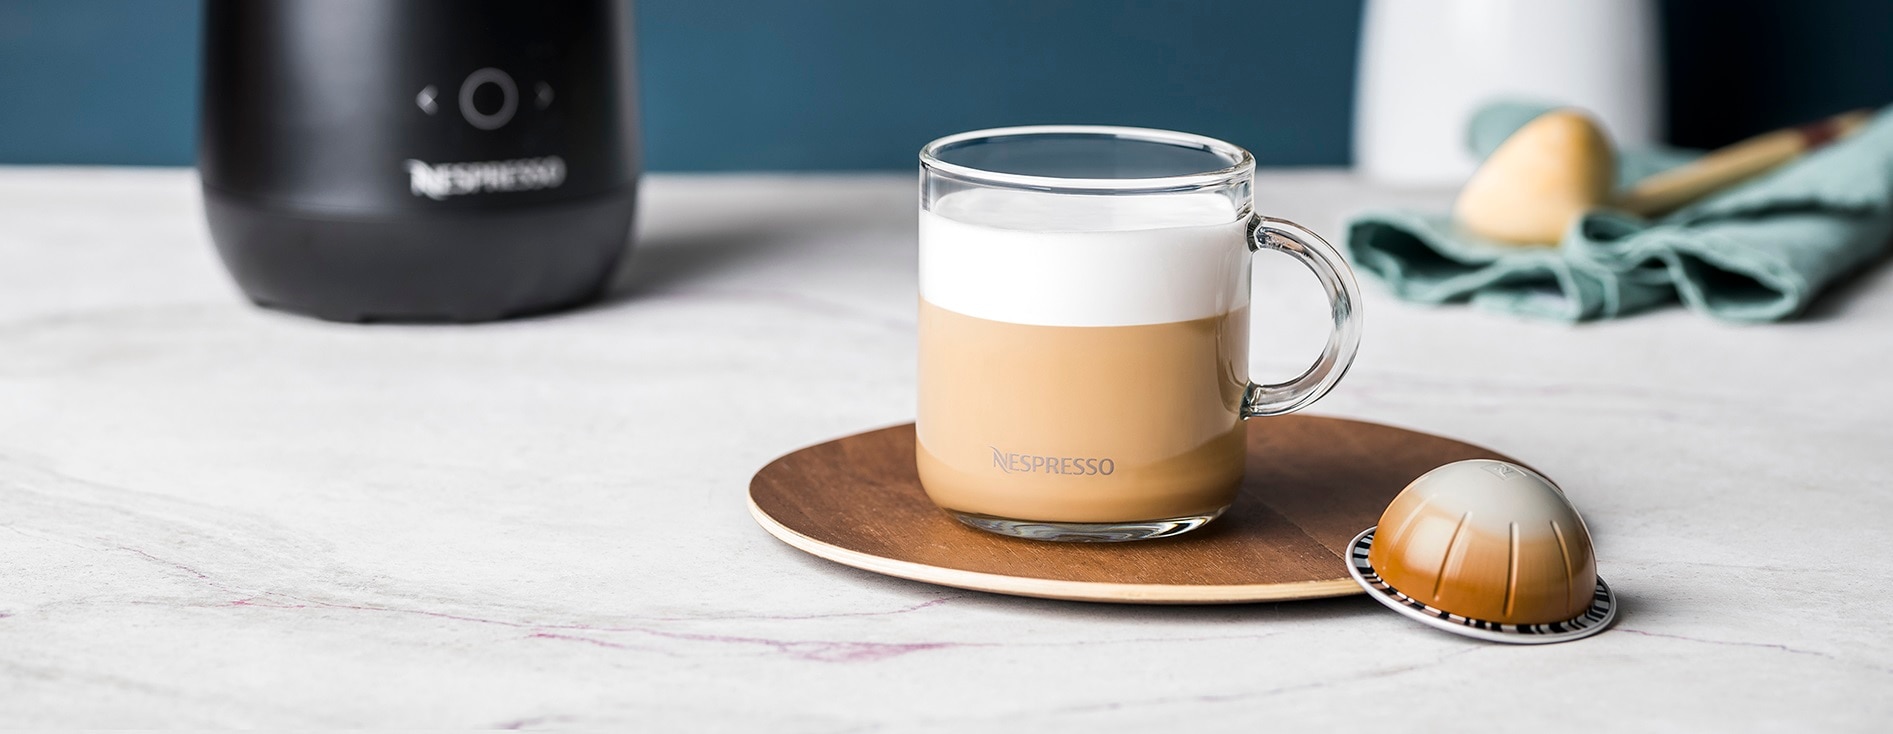 How to Make a Cappuccino with Nespresso - CoffeeHolli.com